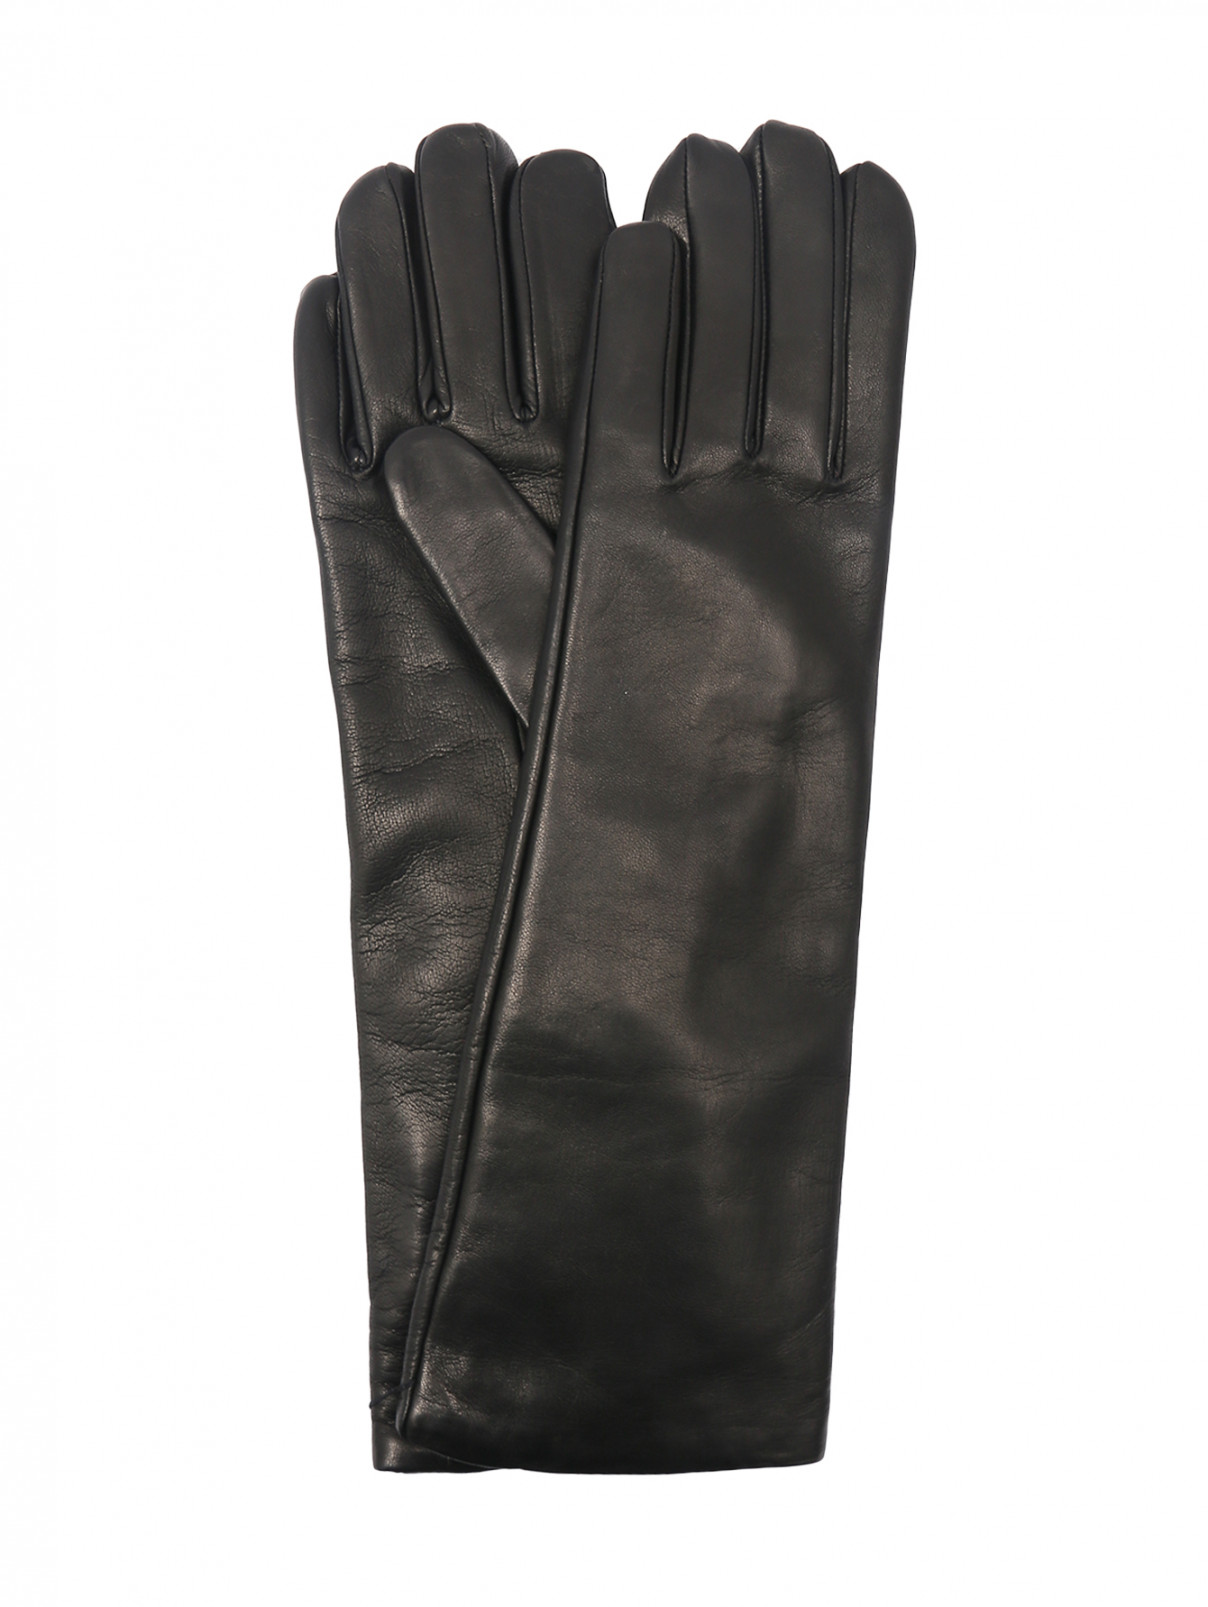 Высокие перчатки из гладкой кожи Weekend Max Mara  –  Общий вид  – Цвет:  Коричневый